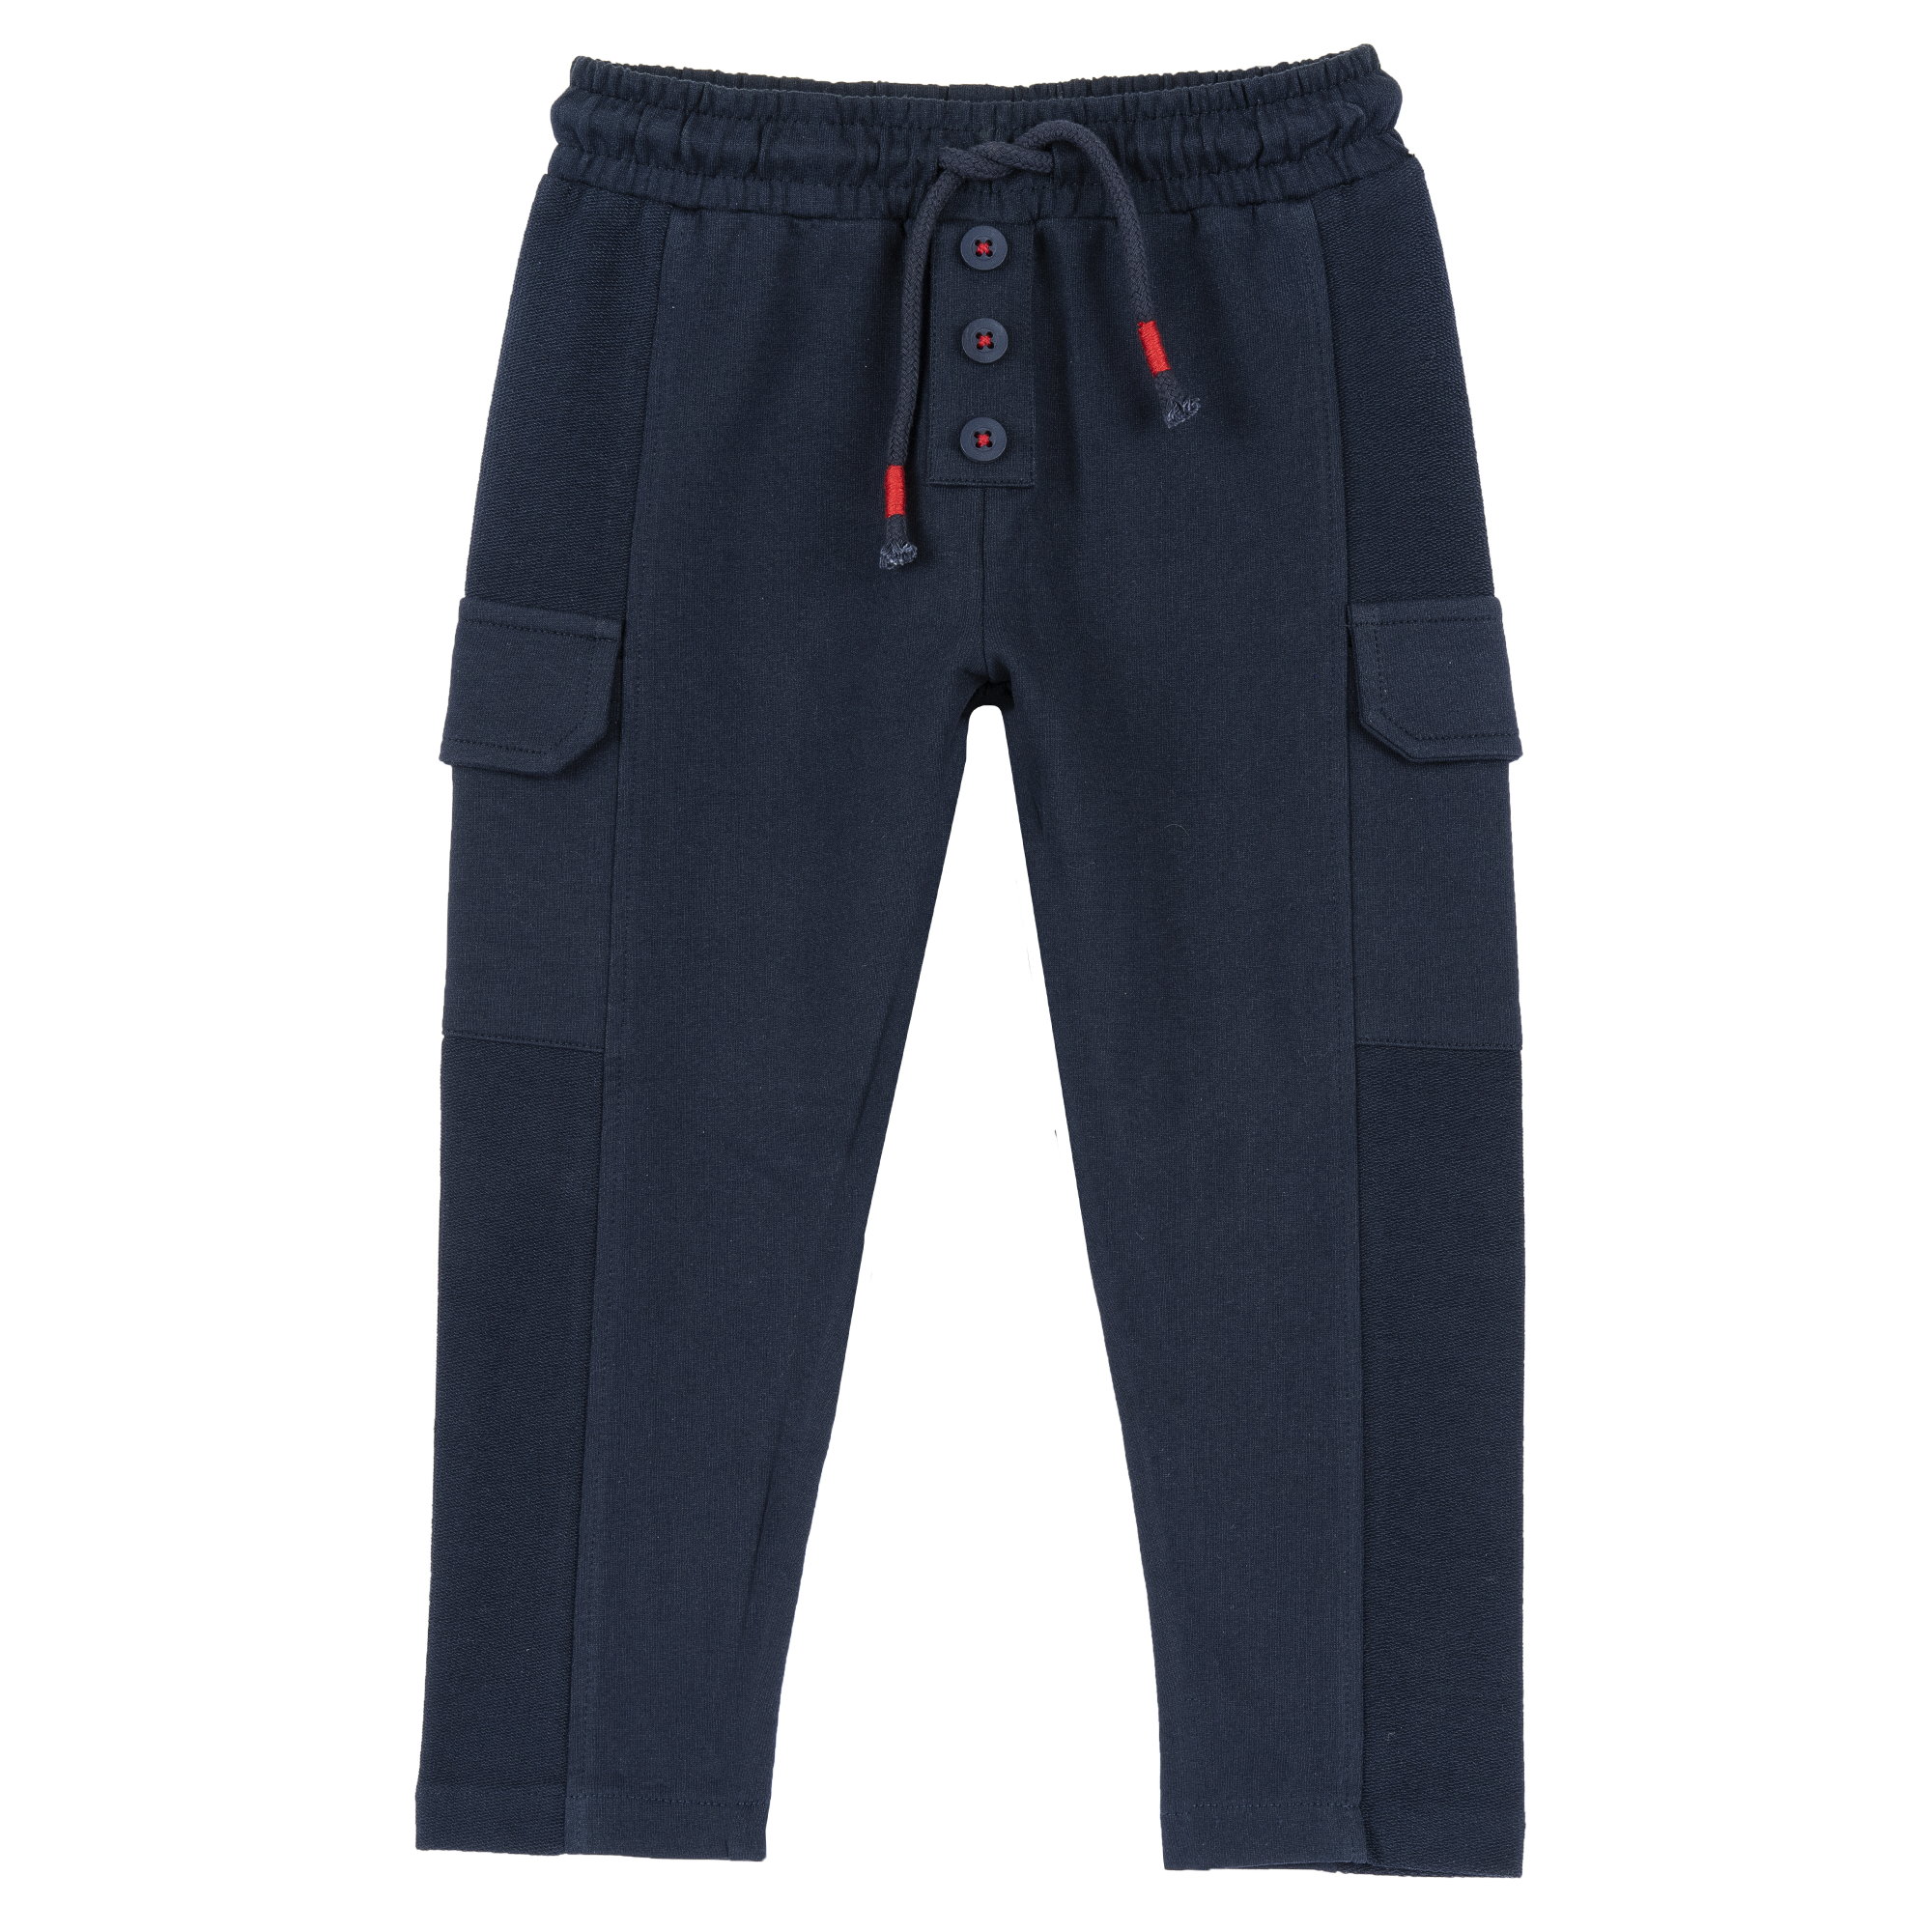 Pantaloni Copii Chicco, Albastru Inchis, 05642-66mc